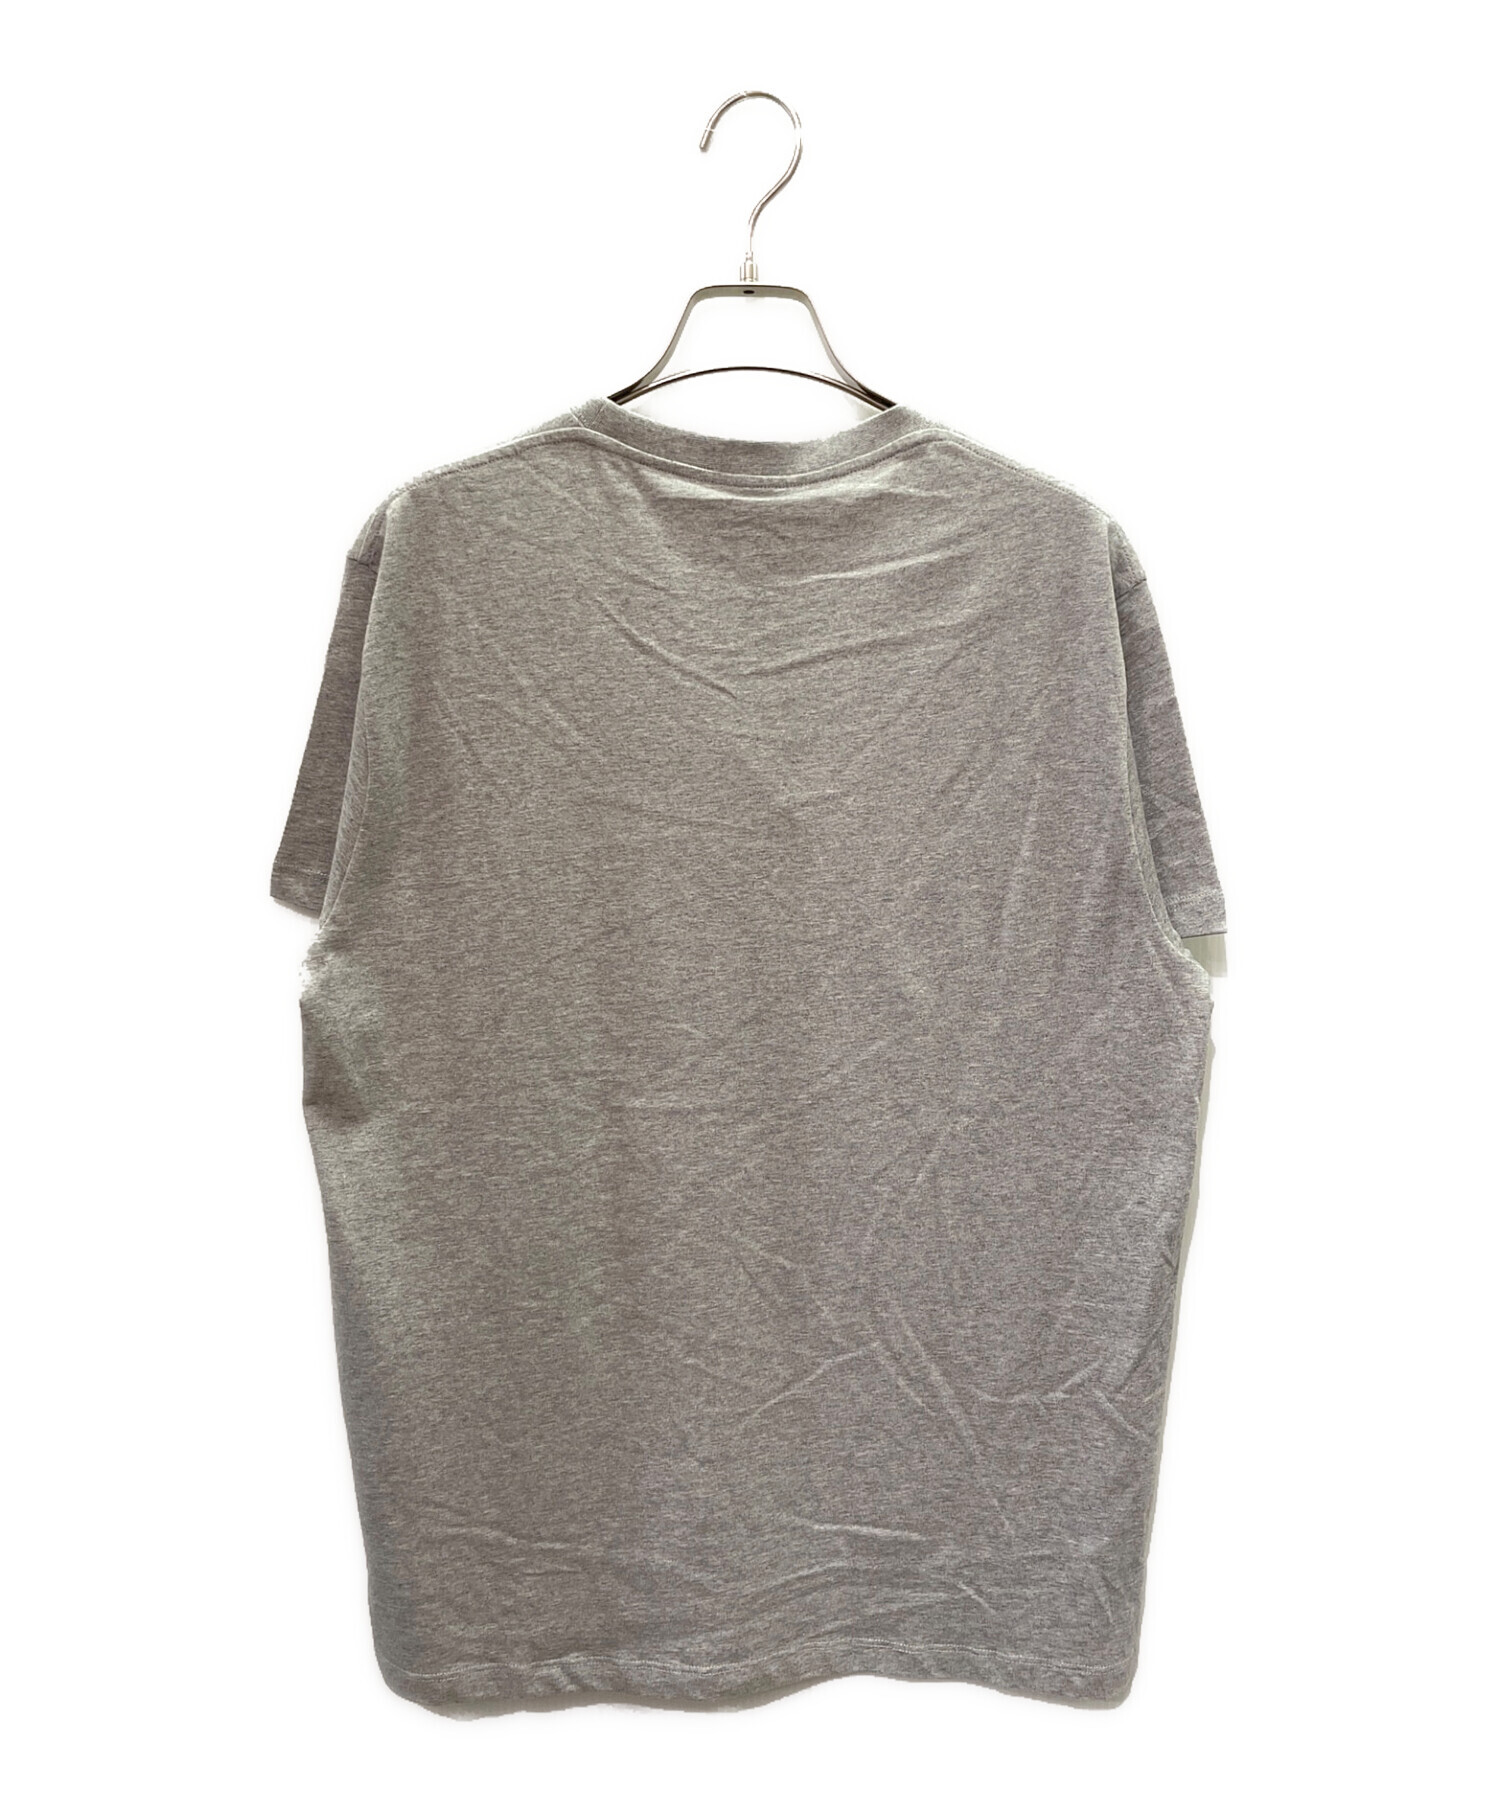 約53cm【美品】 LOEWE アナグラム ロゴ Tシャツ Mサイズ グレー